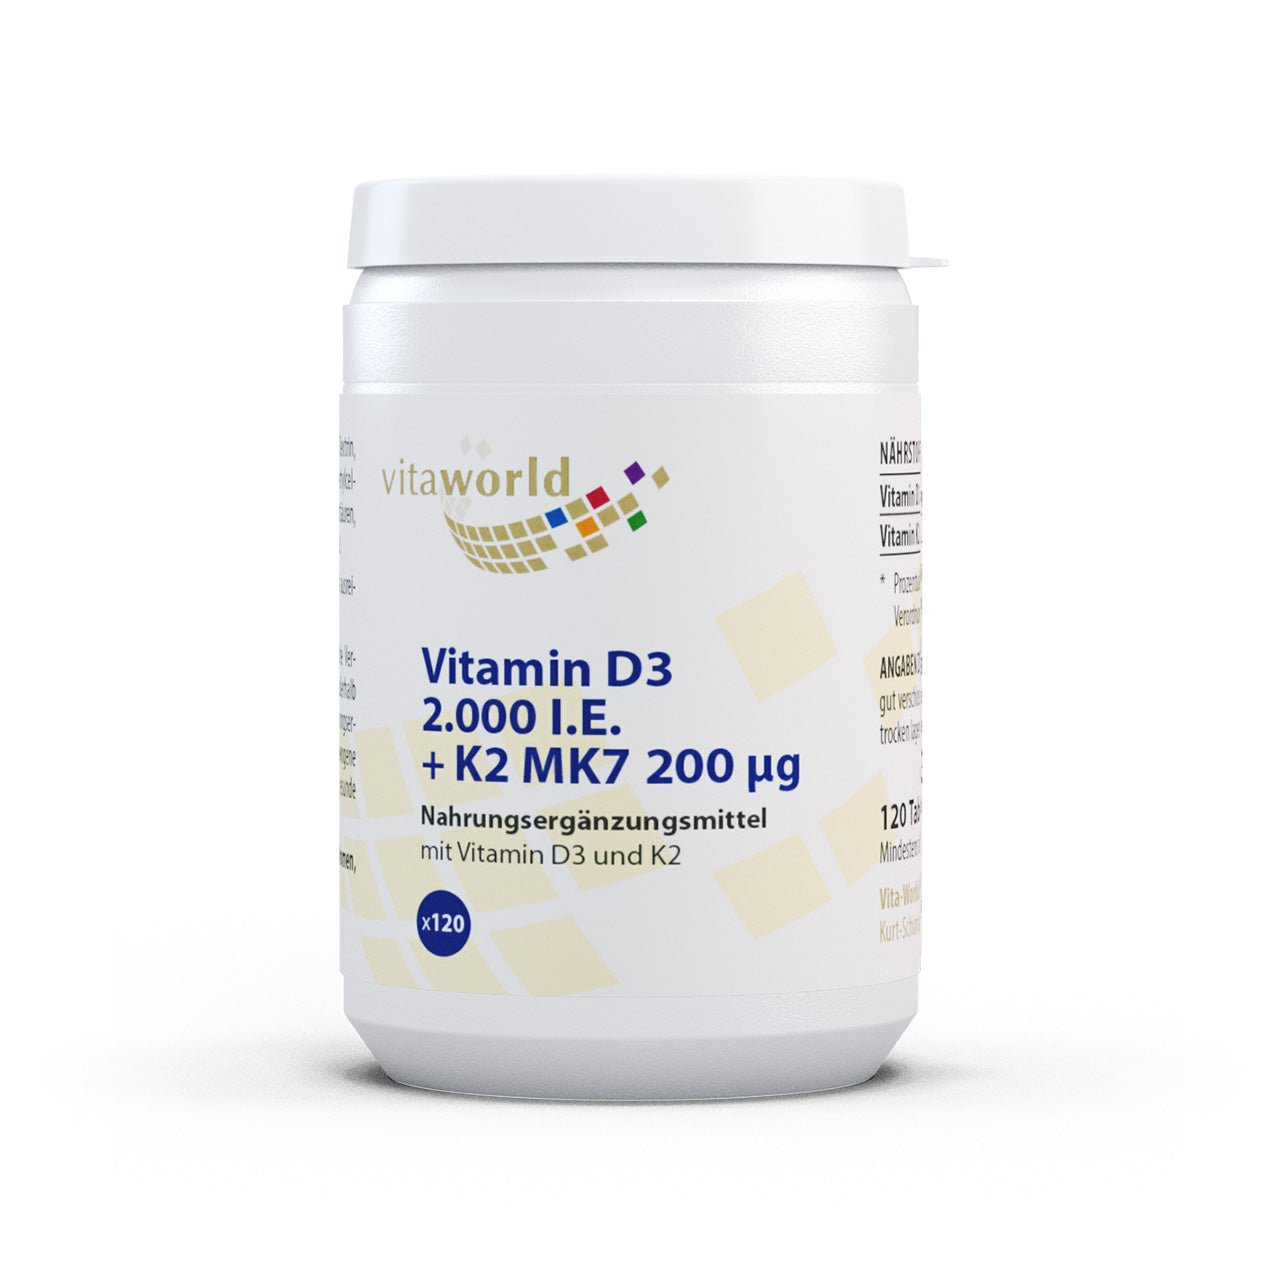 Vitamin D3 2000 I.E. + K2 MK7 200 µg (120 Tbl)